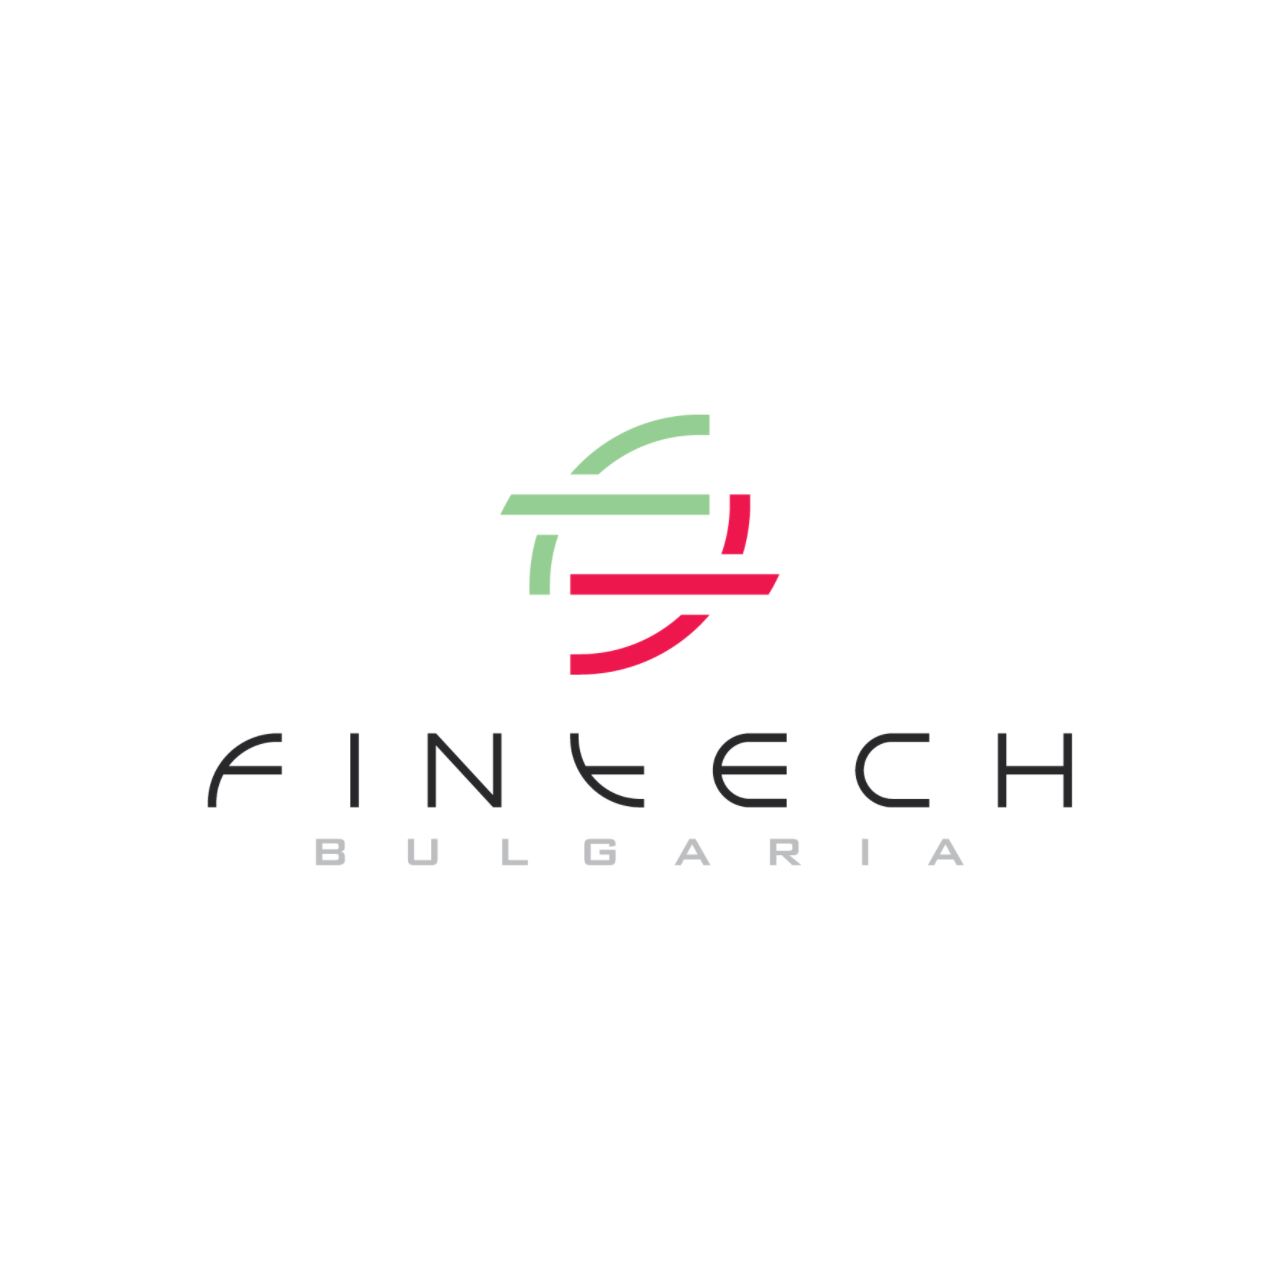 Bulgarian Fintech Association